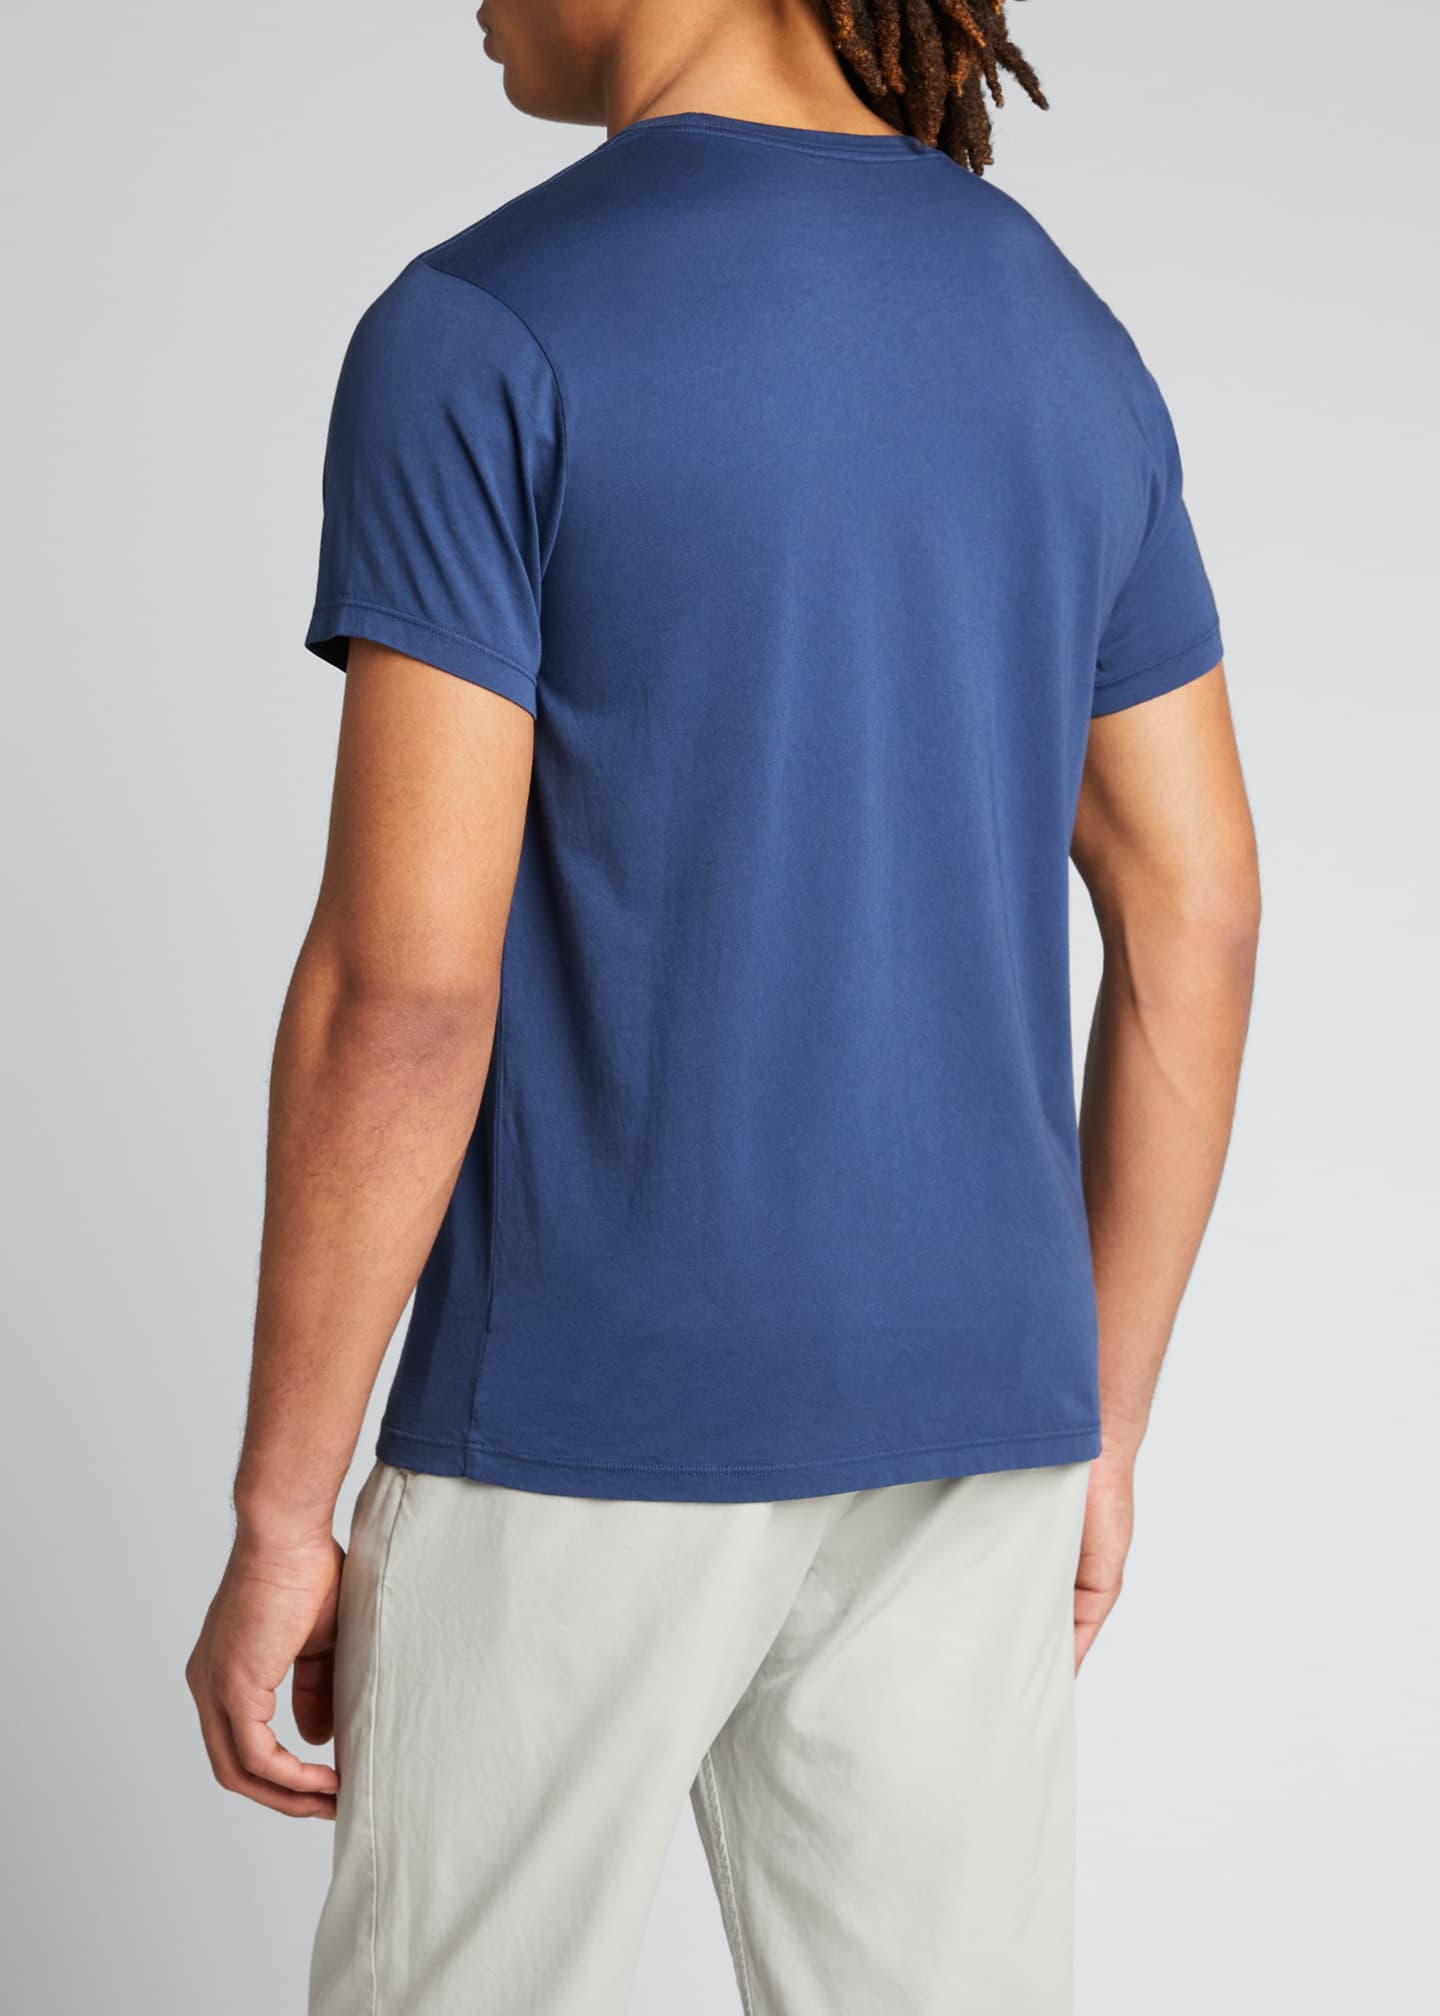 Save Khaki Men's Supima Jersey Solid Crewneck T-Shirt - Bergdorf Goodman